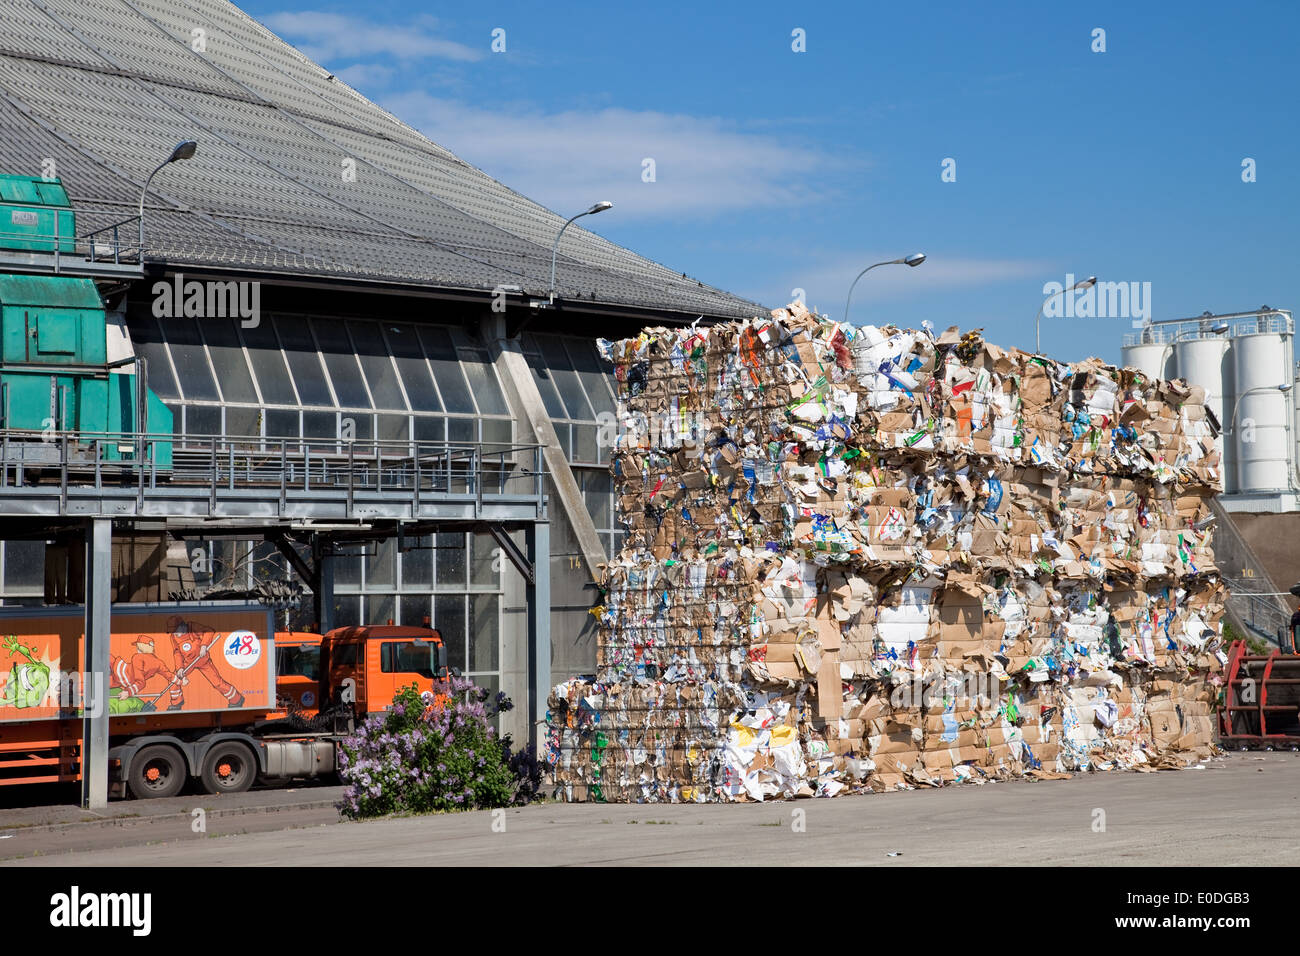 Rinterzelt Müllaufbereitungs Verbrennungsanlage,/, Wien, Österreich - Rinterzelt, installations de gestion des déchets, Vienne, Autriche Banque D'Images